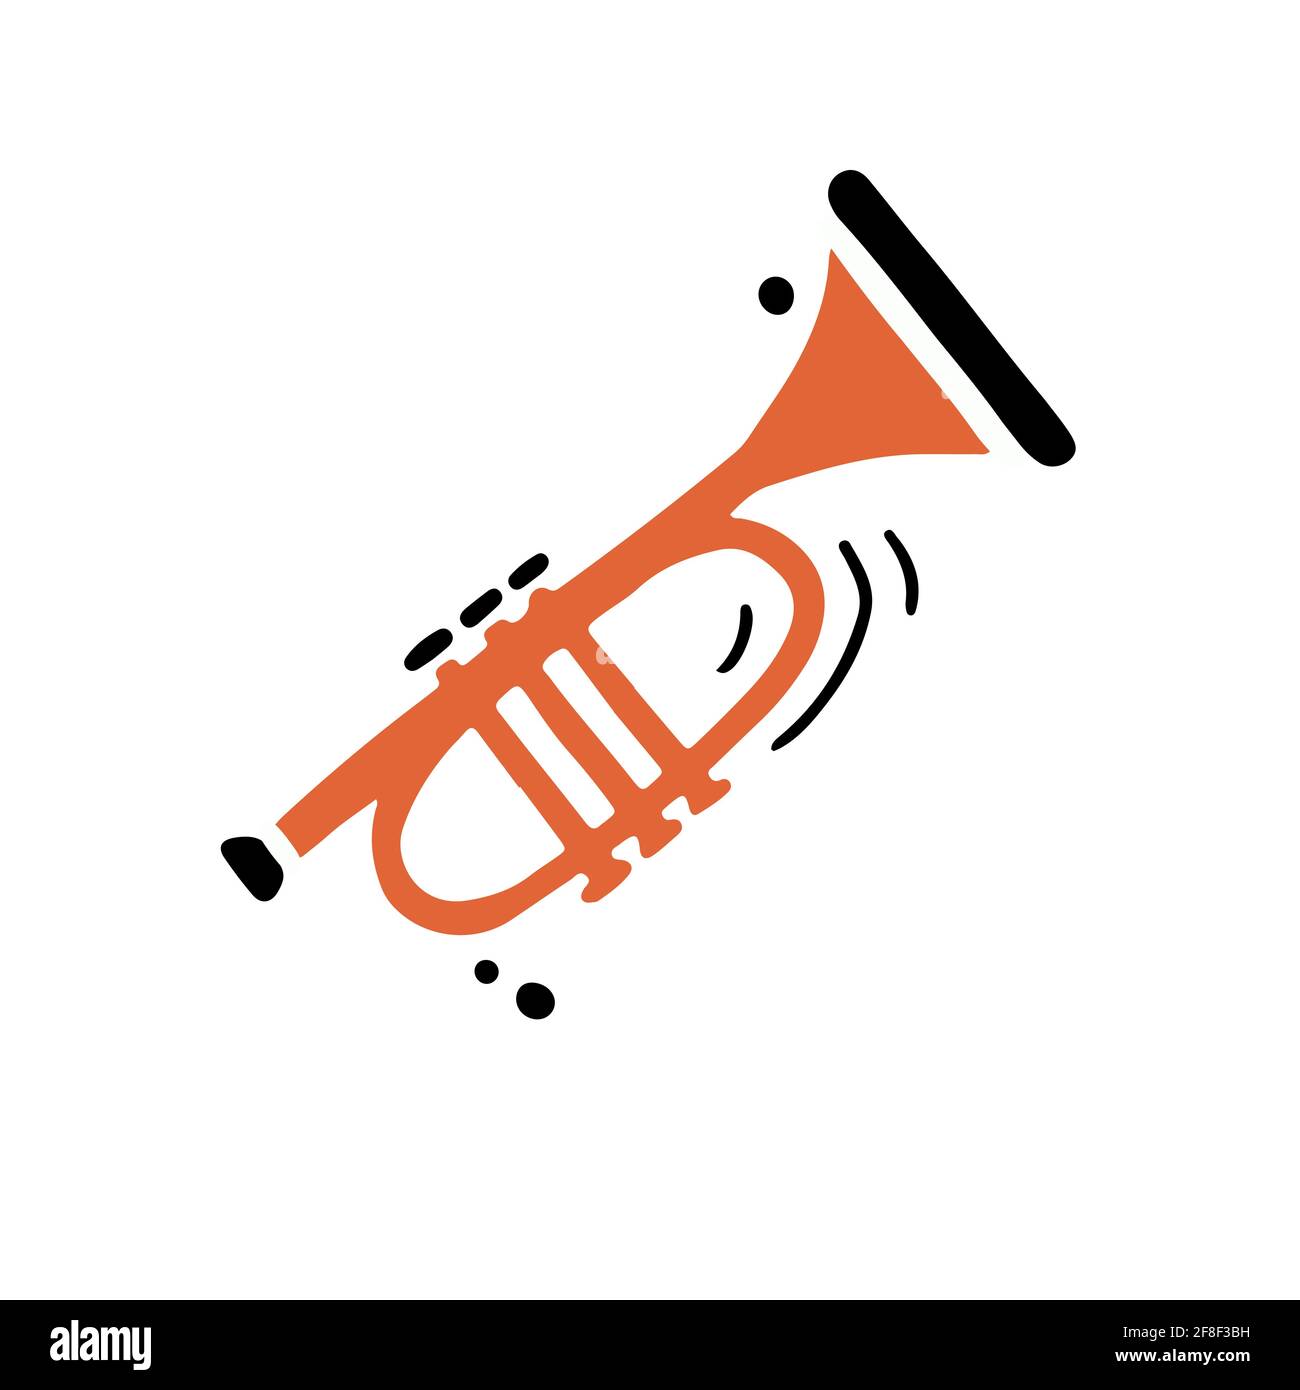 Illustration vectorielle simple de l'instrument de vent classique appelé trompette main style minimaliste et plat, coloris noir et orange symbole de la création et de la lecture de musique créative Illustration de Vecteur